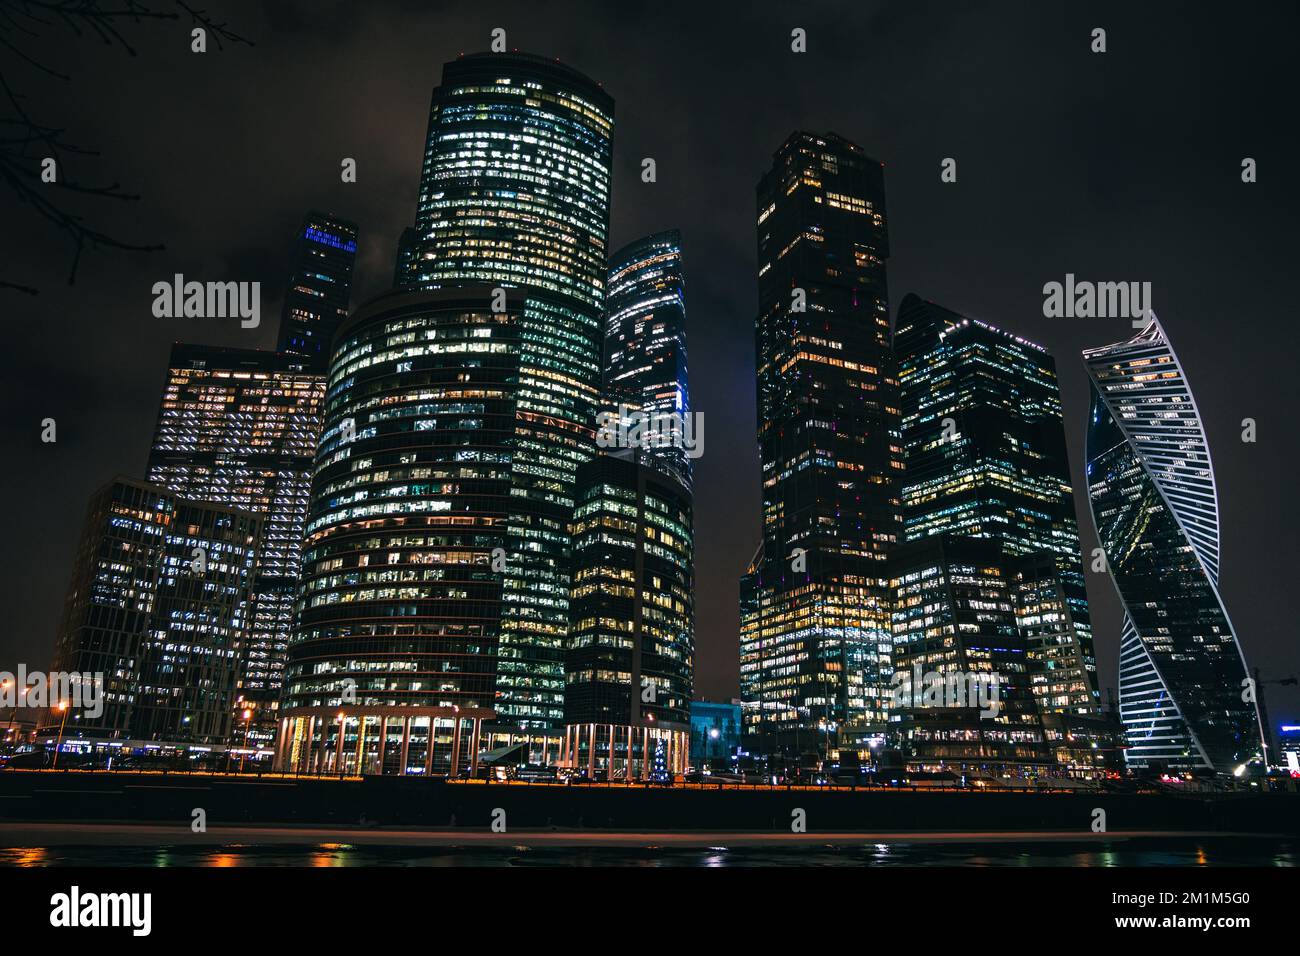 Mosca, Russia - sfondo urbano. Mosca città nella notte d'inverno. Grattacieli moderni nel centro di Mosca-città, la torre della Federazione, la torre del mercurio ecc Foto Stock